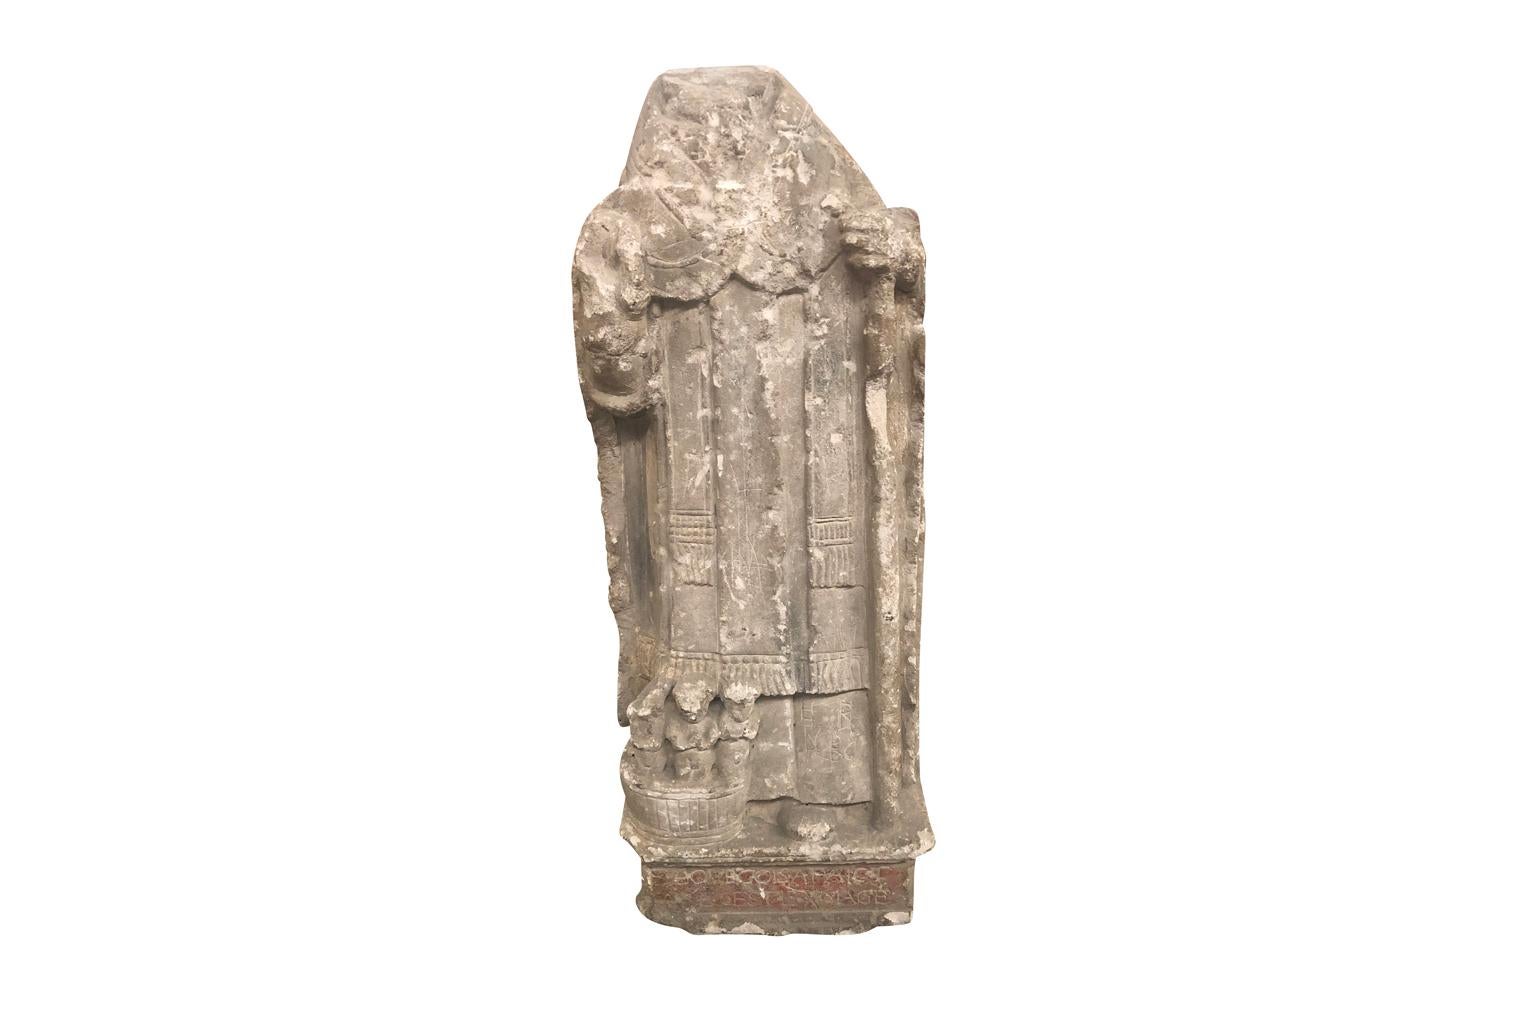 Eine wunderbare, handgeschnitzte Steinstatue des Heiligen Nikolaus aus der Gegend von Avignon in Frankreich aus der Gotik. Der nun kopflose Nikolaus hält seinen Stab und zu seinen Füßen liegen drei Kinder in einer Wanne.